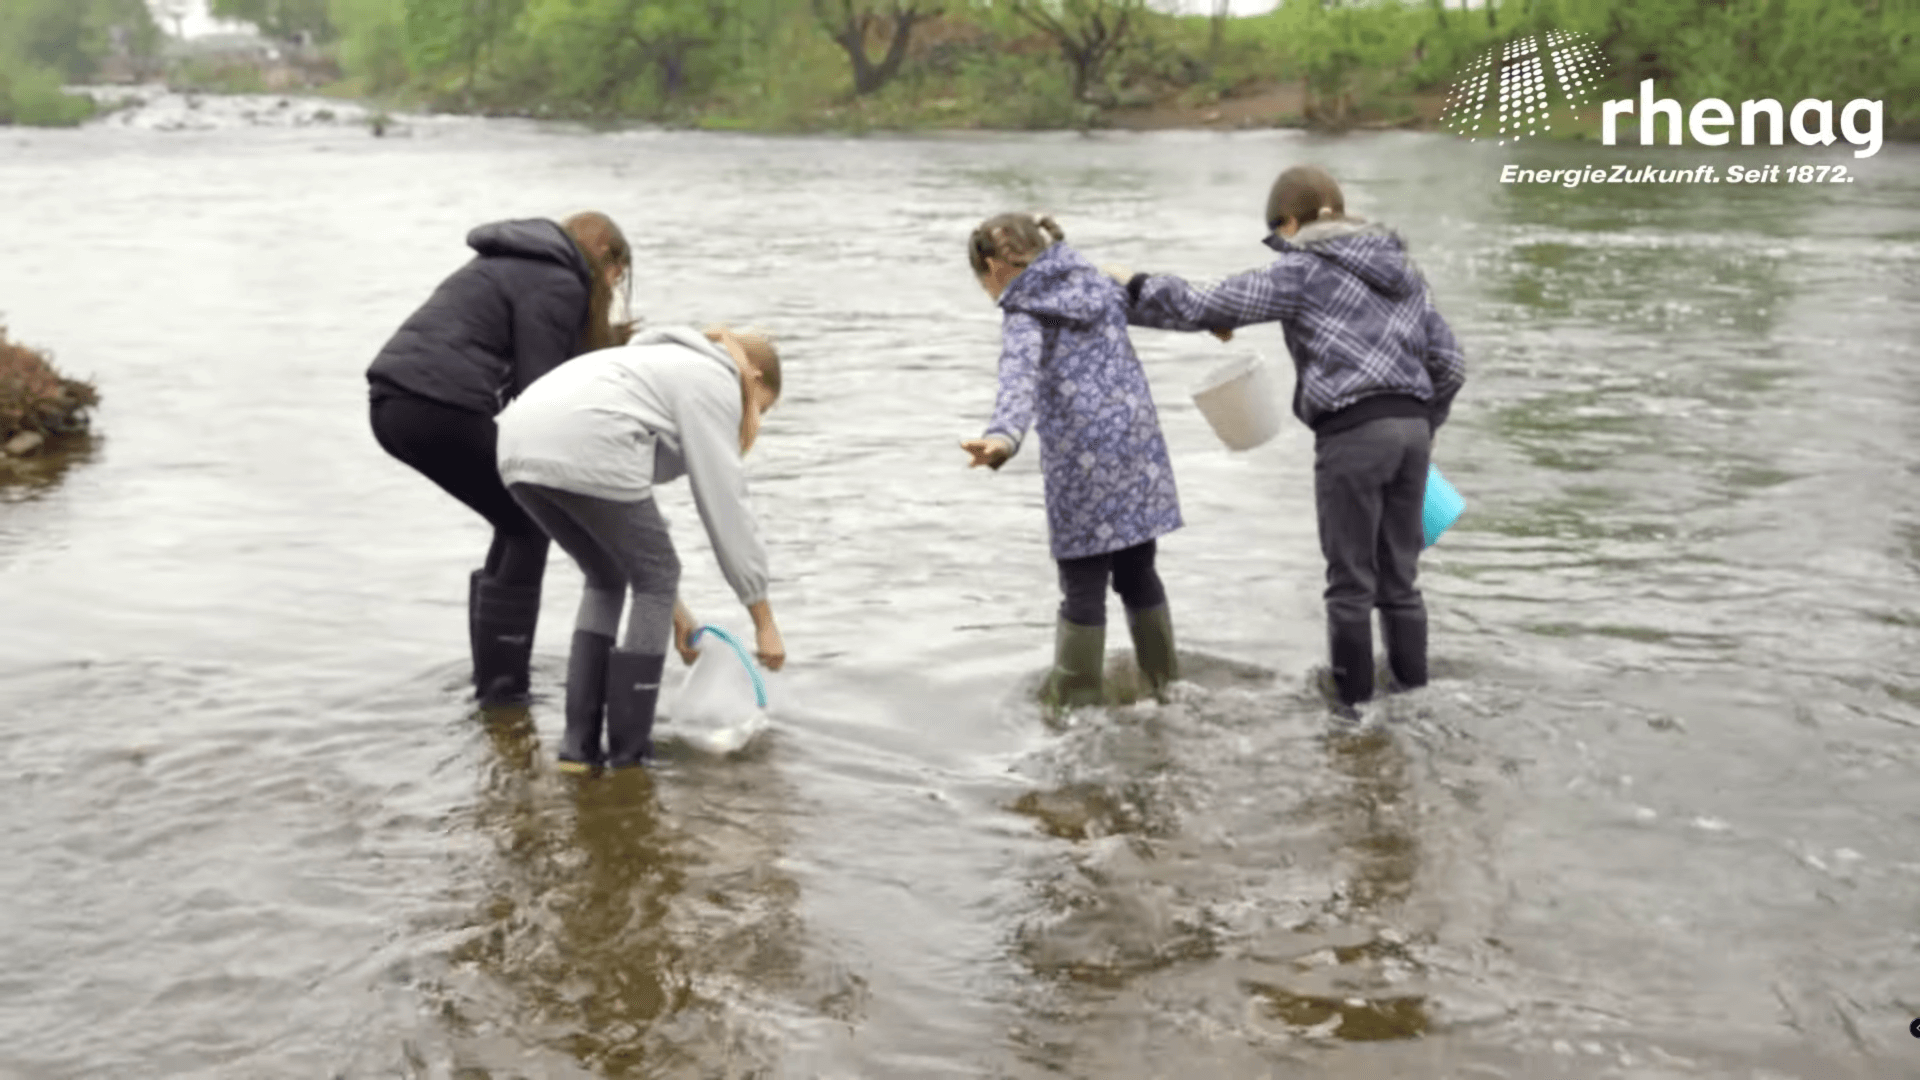 Kinder am Fluss mit Eimern